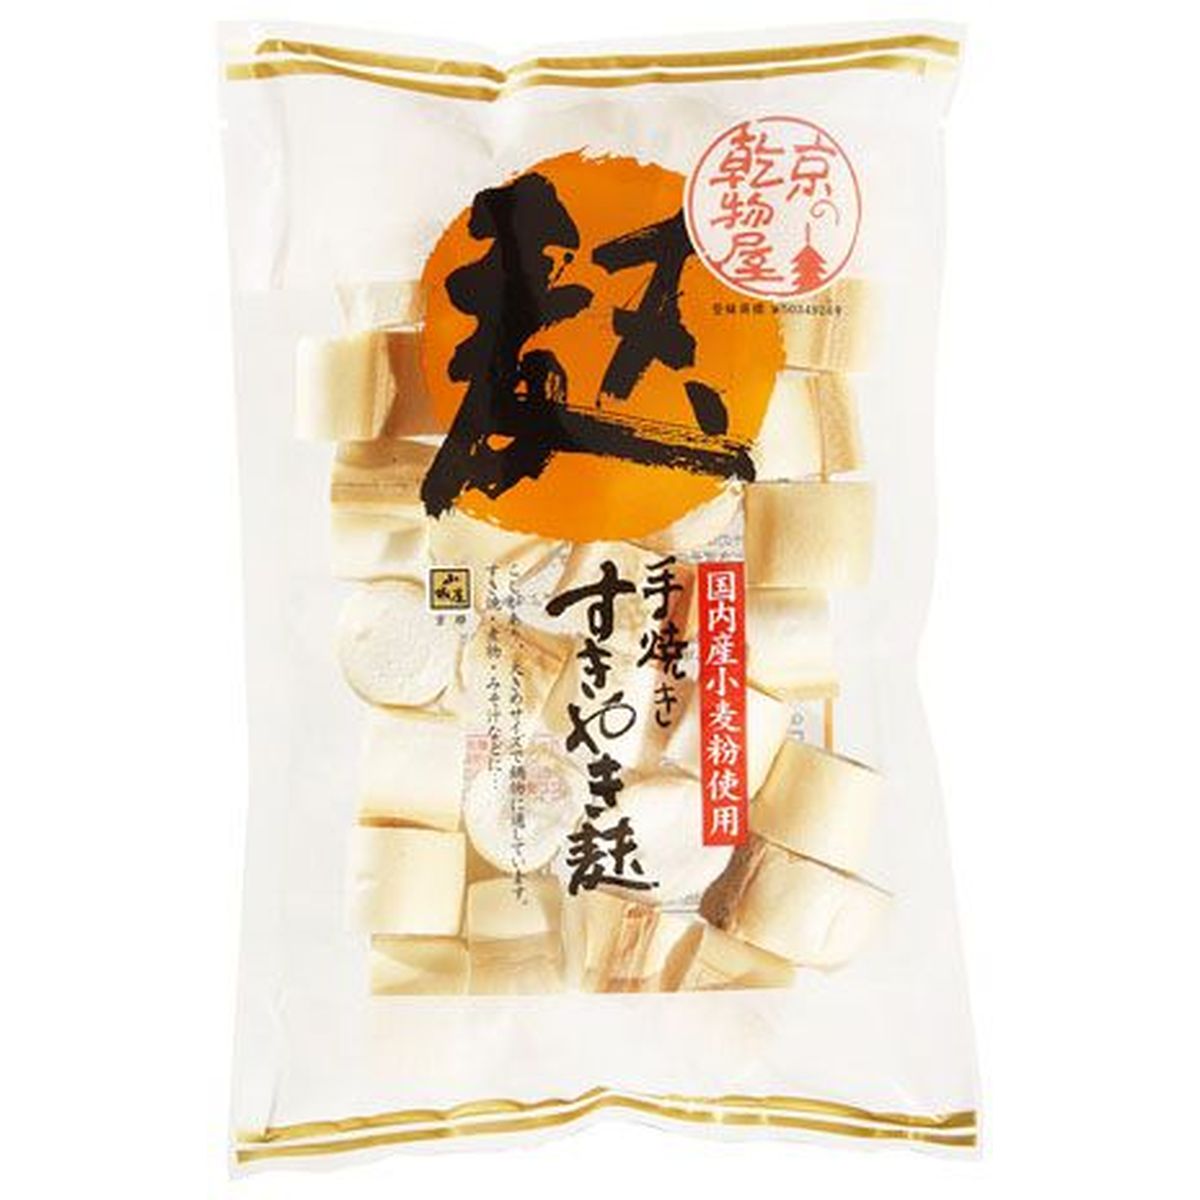 【10個入リ】山城屋 国内産小麦 スキ焼麩 35g